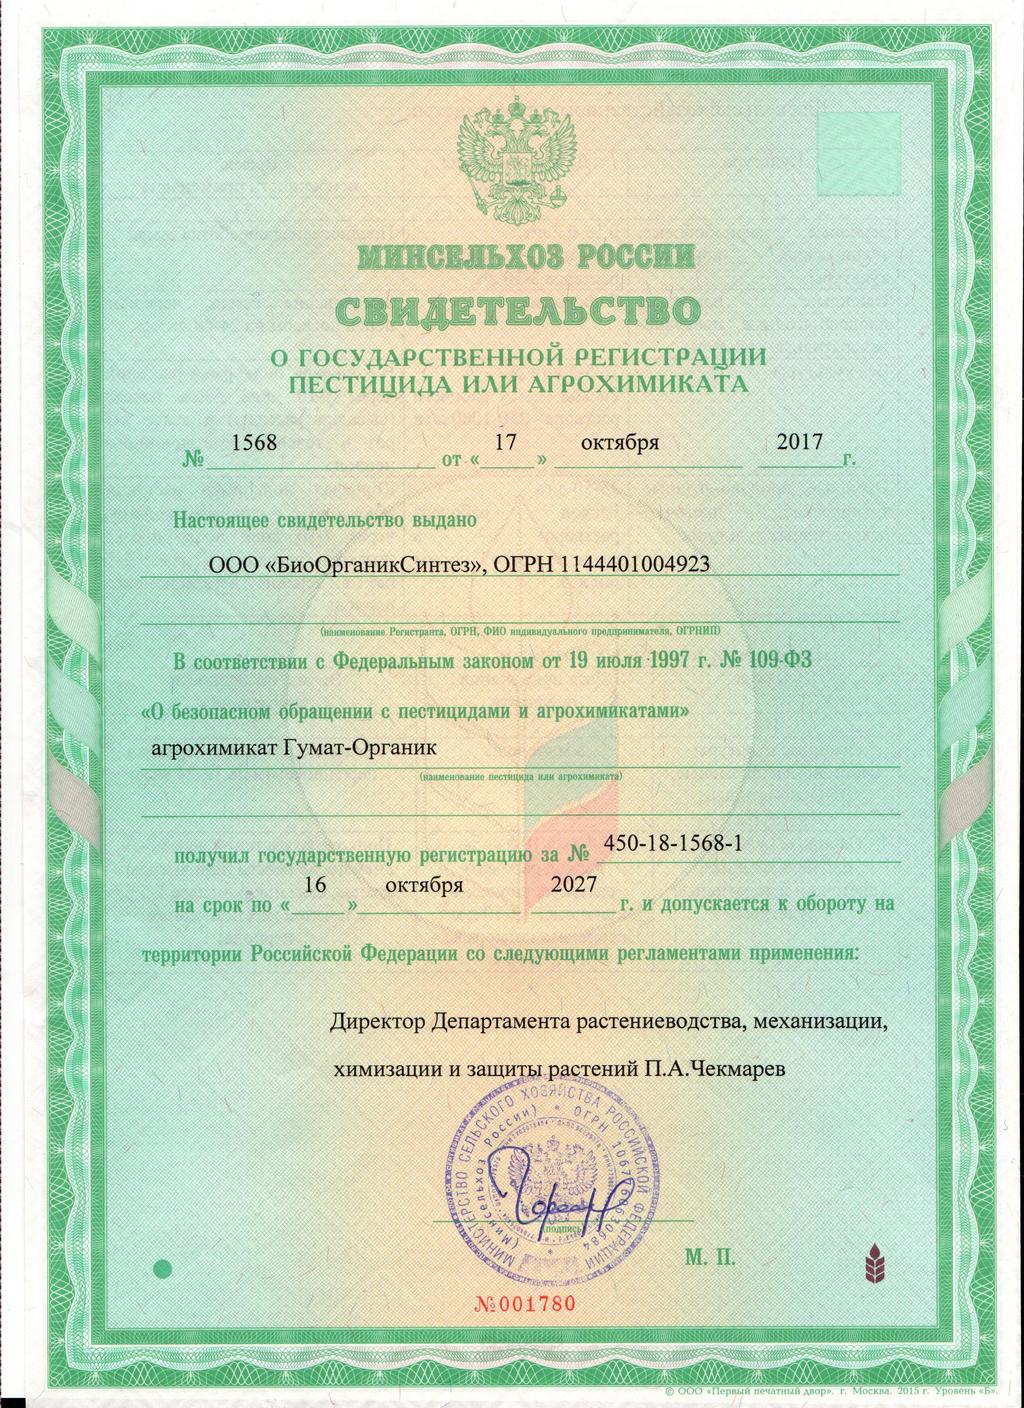  Гумат-Органик зарегистрирован в Министерстве Сельского Хозяйства РФ